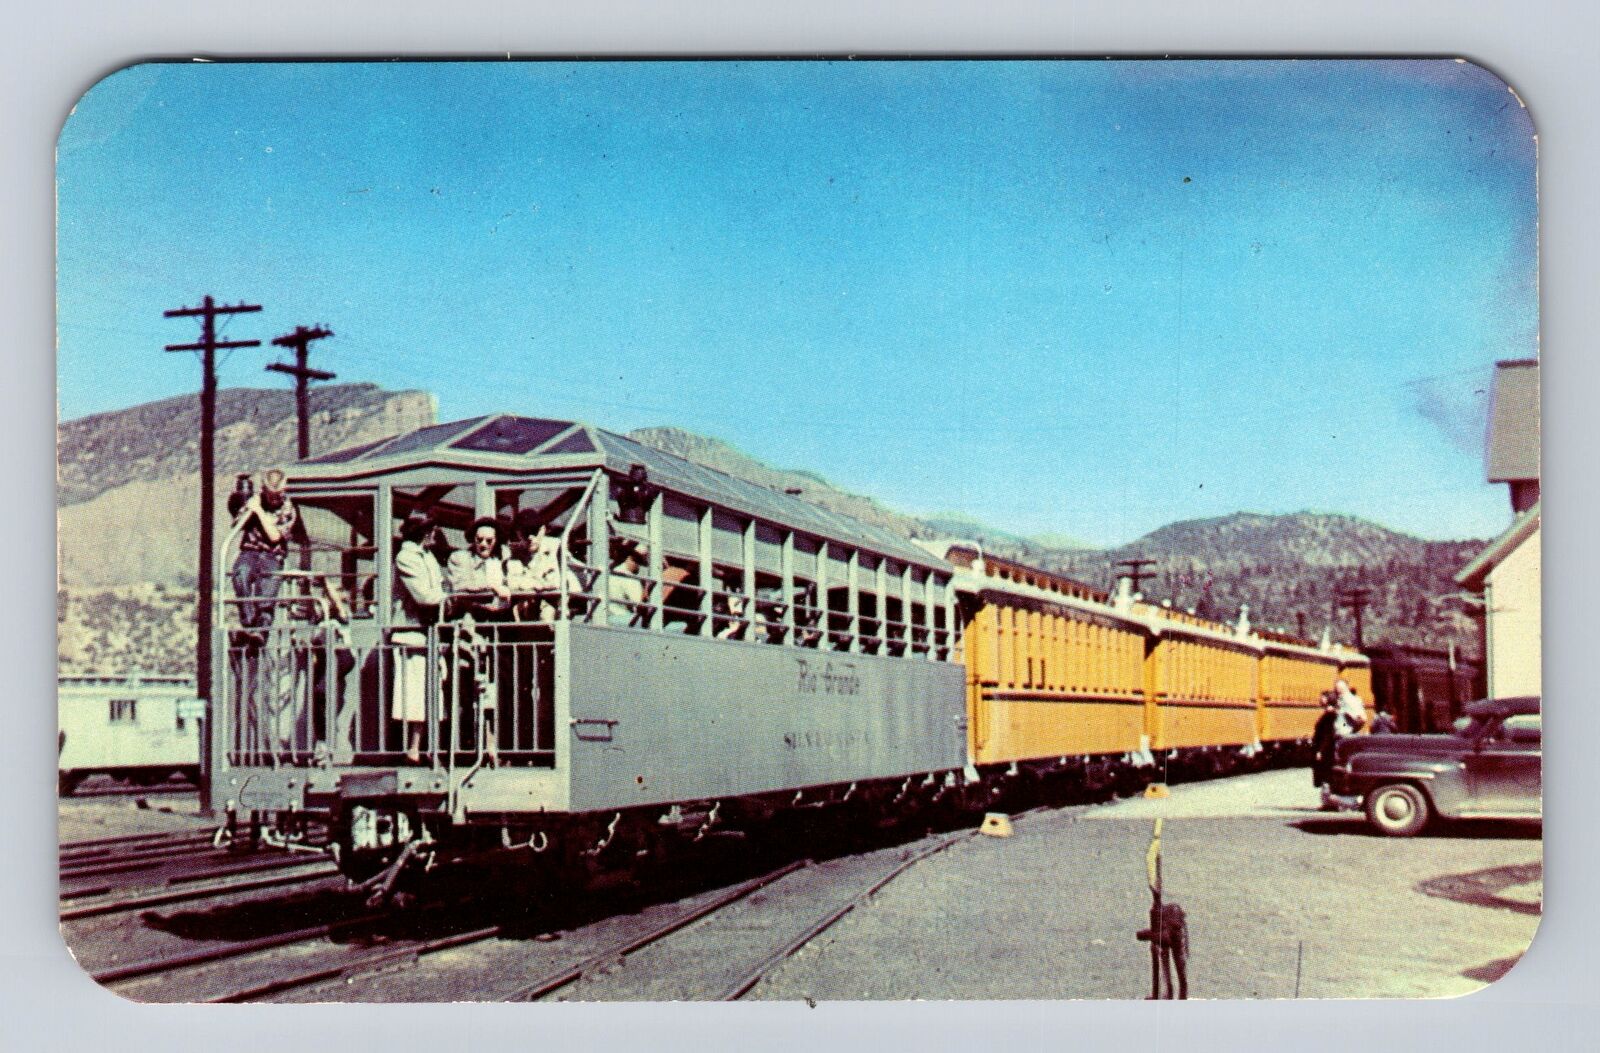 Durango CO-Colorado, Silver Vista Coach, Emma Sweeney Train Vintage Postcard